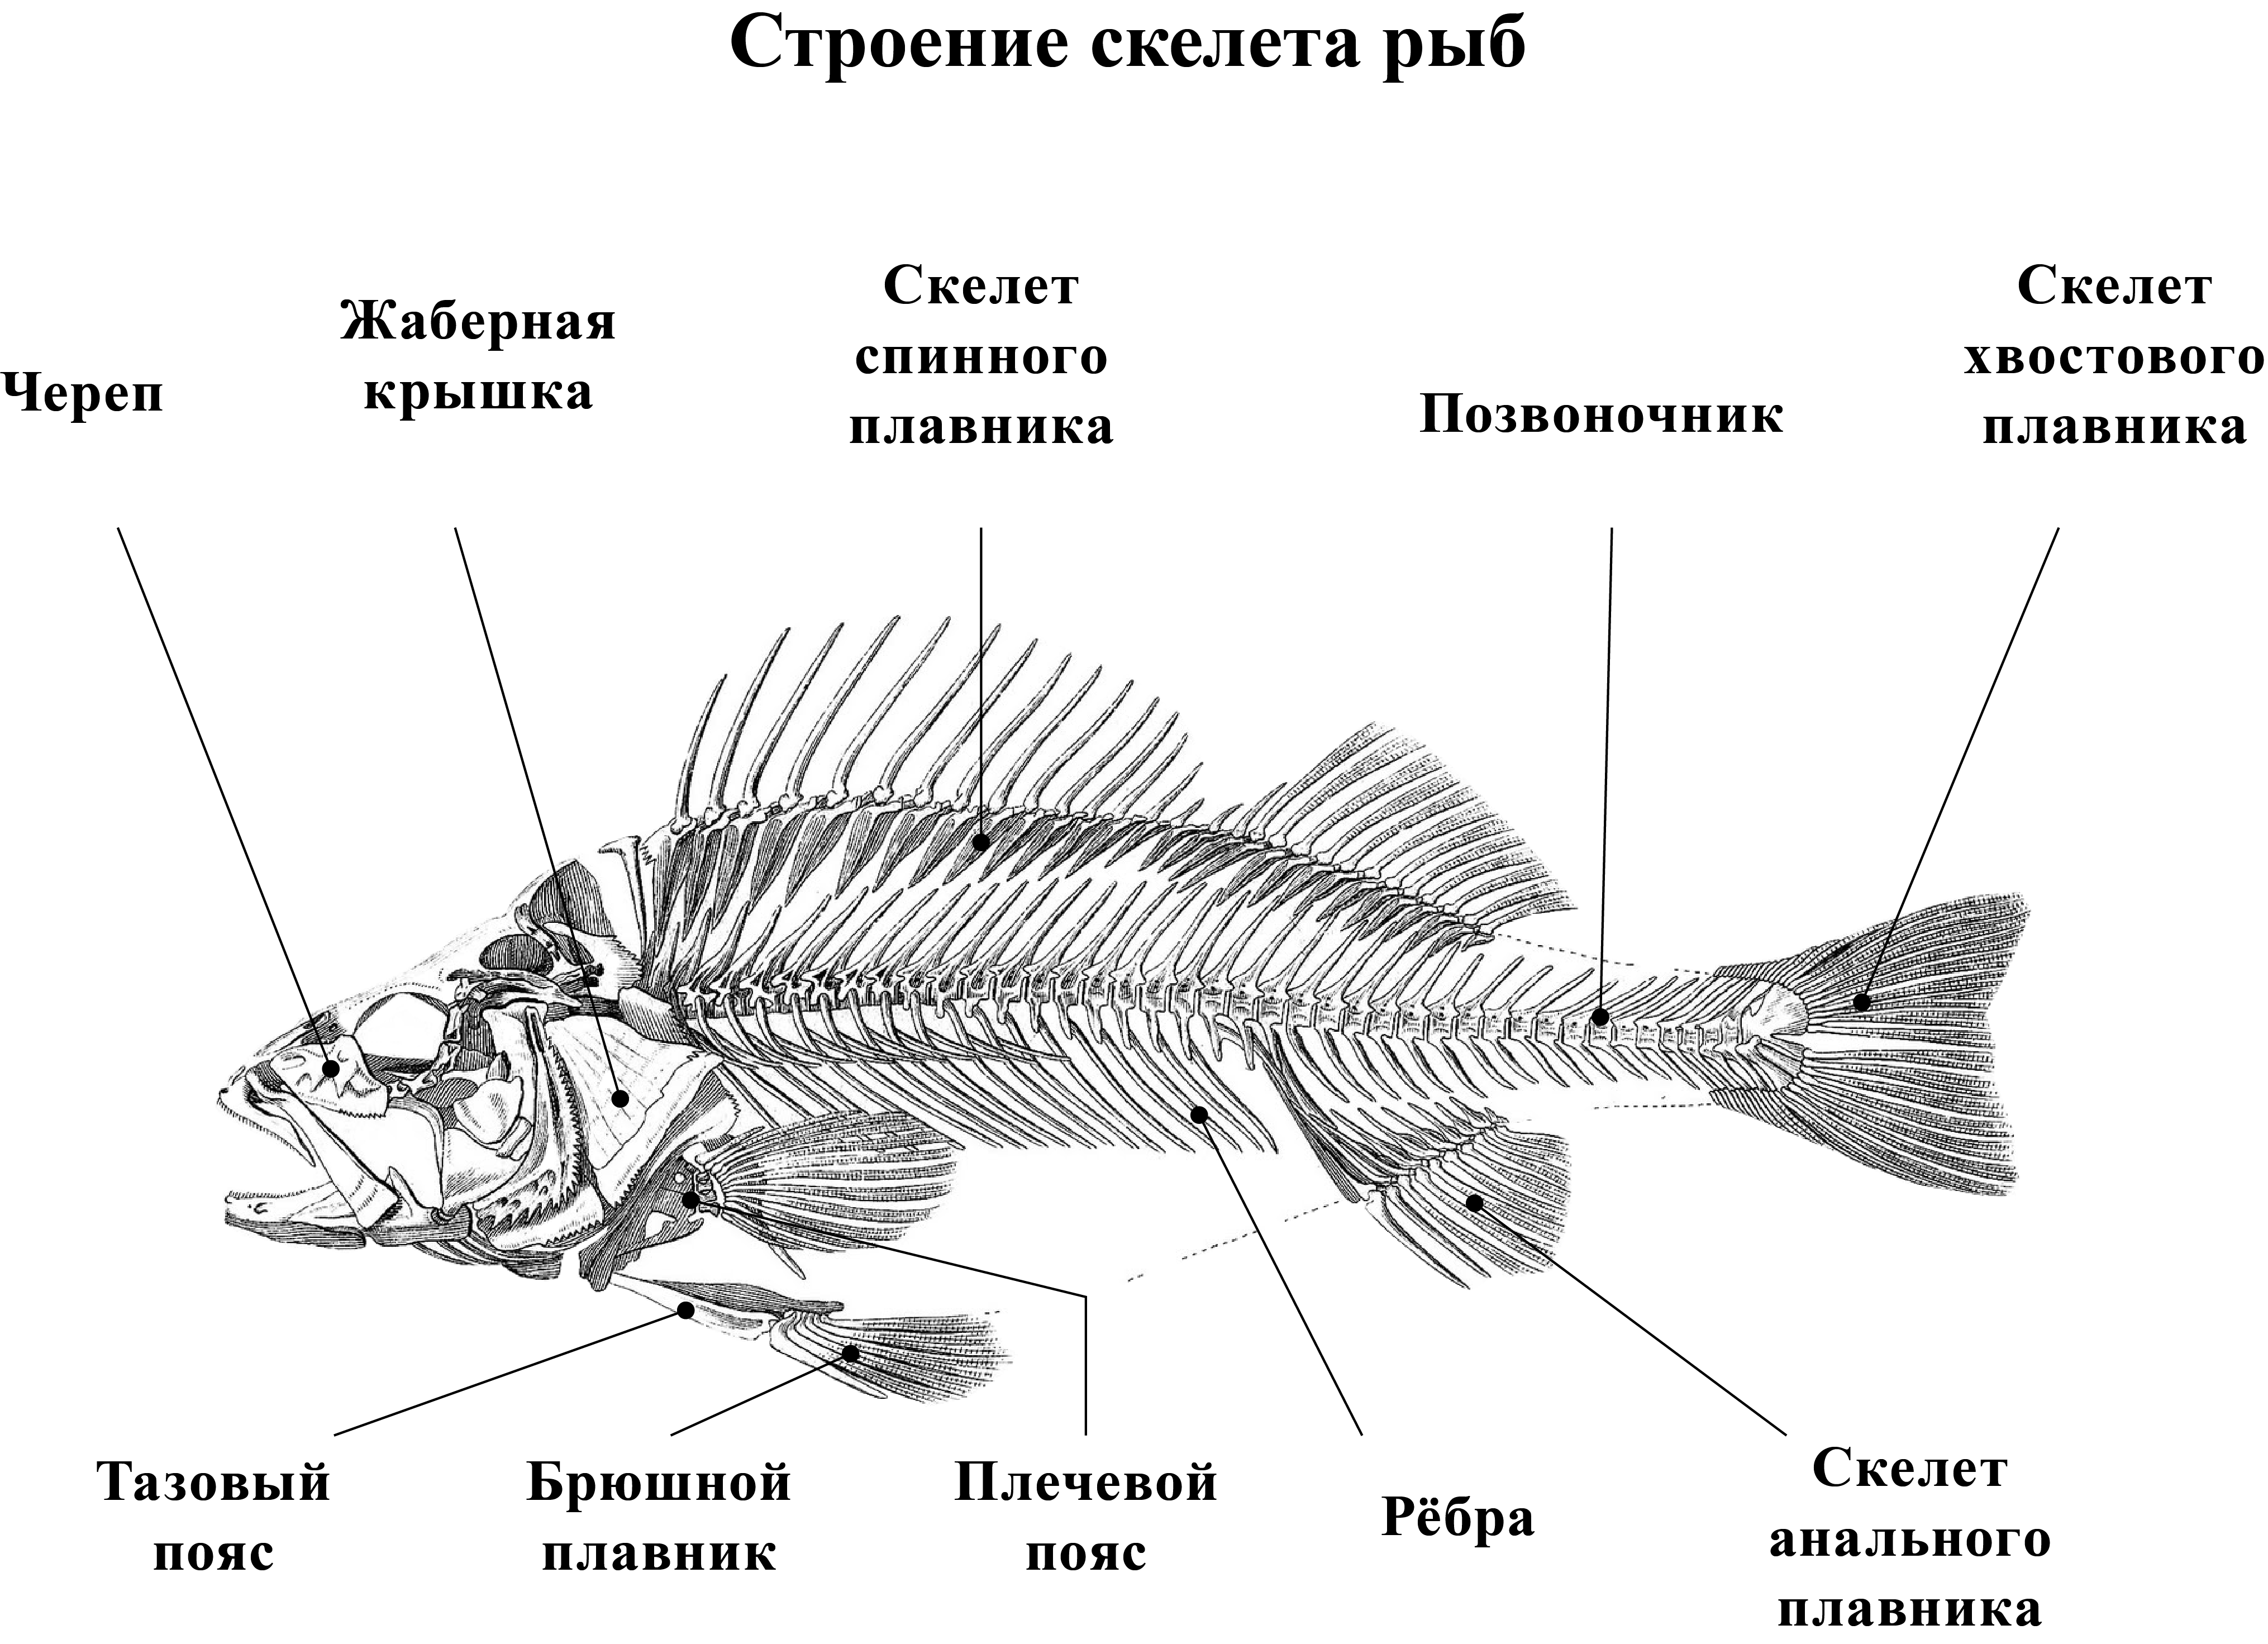 Класс рыбы плавники. Внутреннее строение костистой рыбы схема. Строение скелета рыбы схема. Схема внешнего строения рыбы. Схема строения скелета и внутреннее строение рыбы.